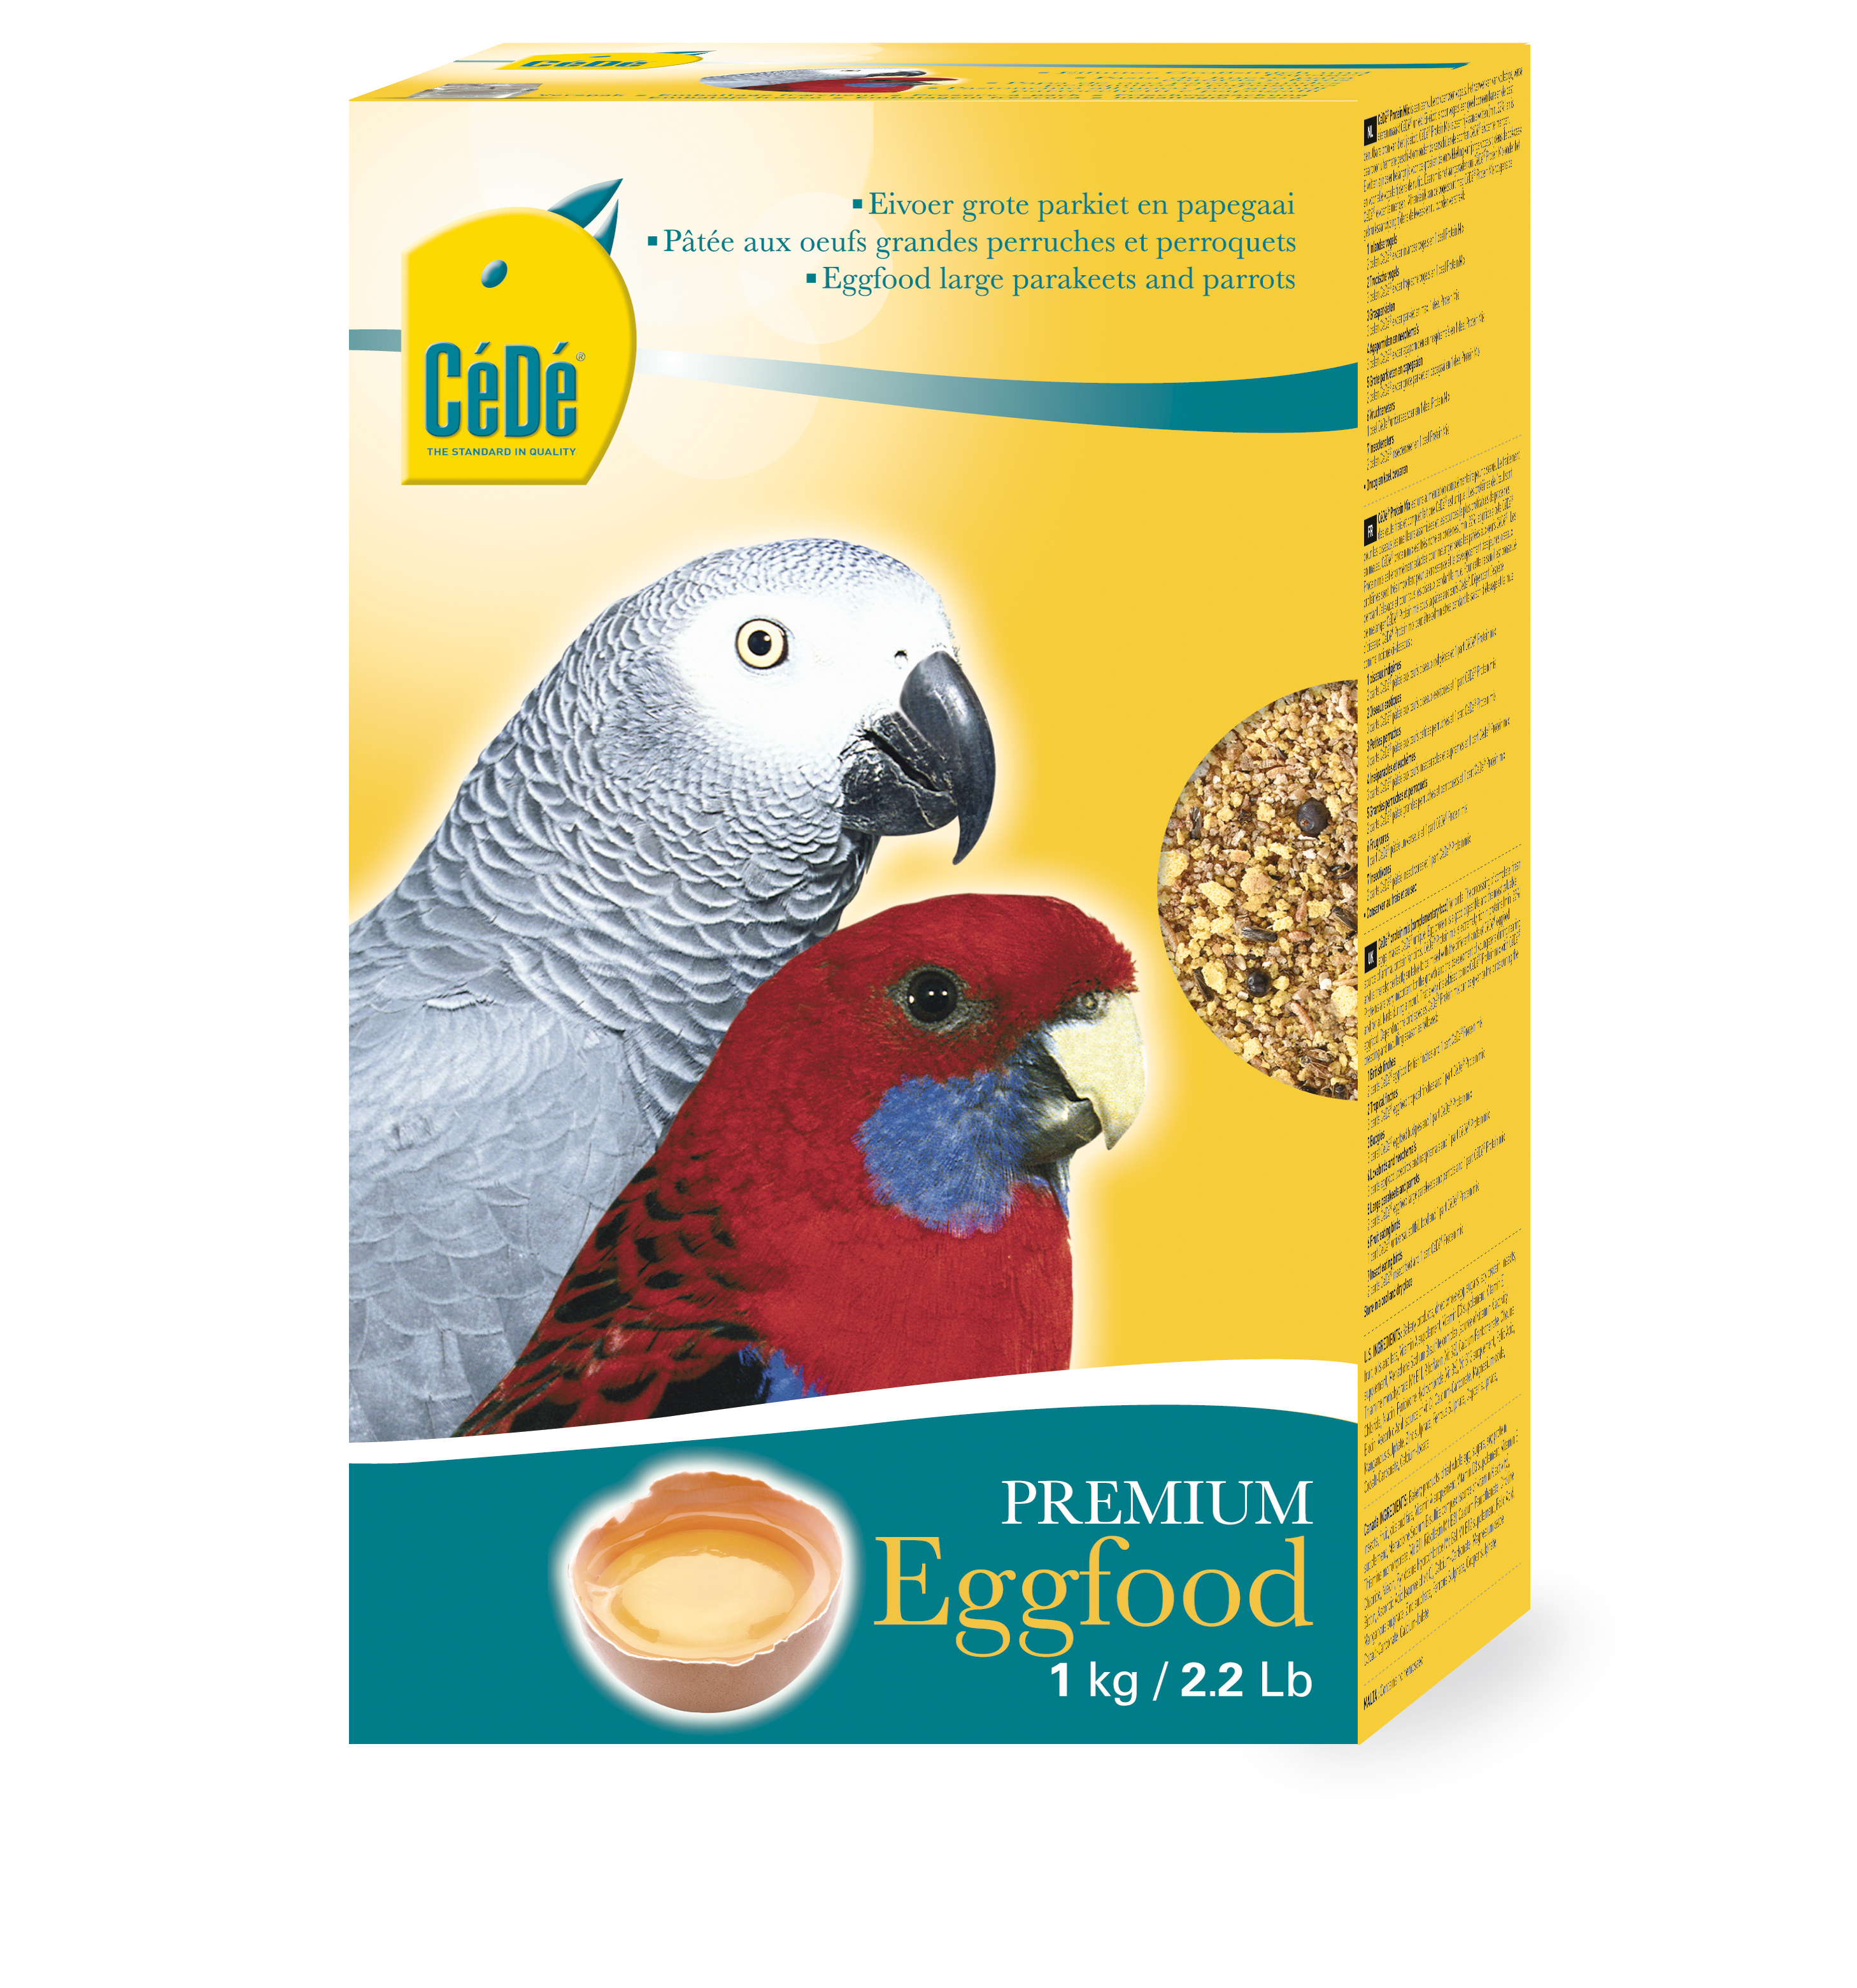 Cédé egg food large parakeet & parrot - <Product shot>